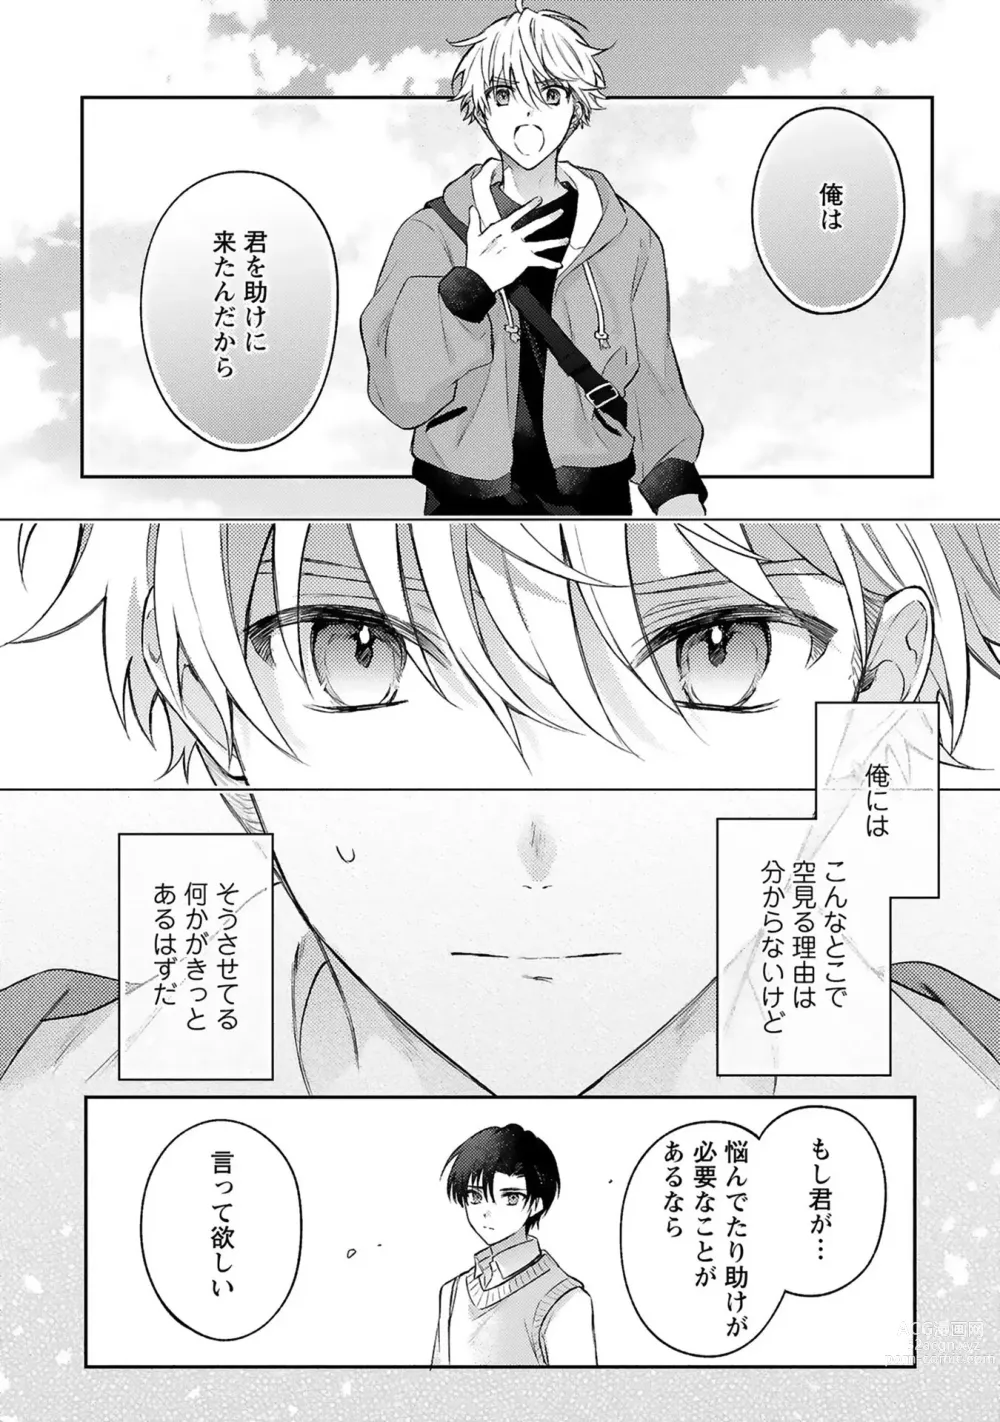 Page 18 of manga Sagashi Mono wa Kimi desu ka